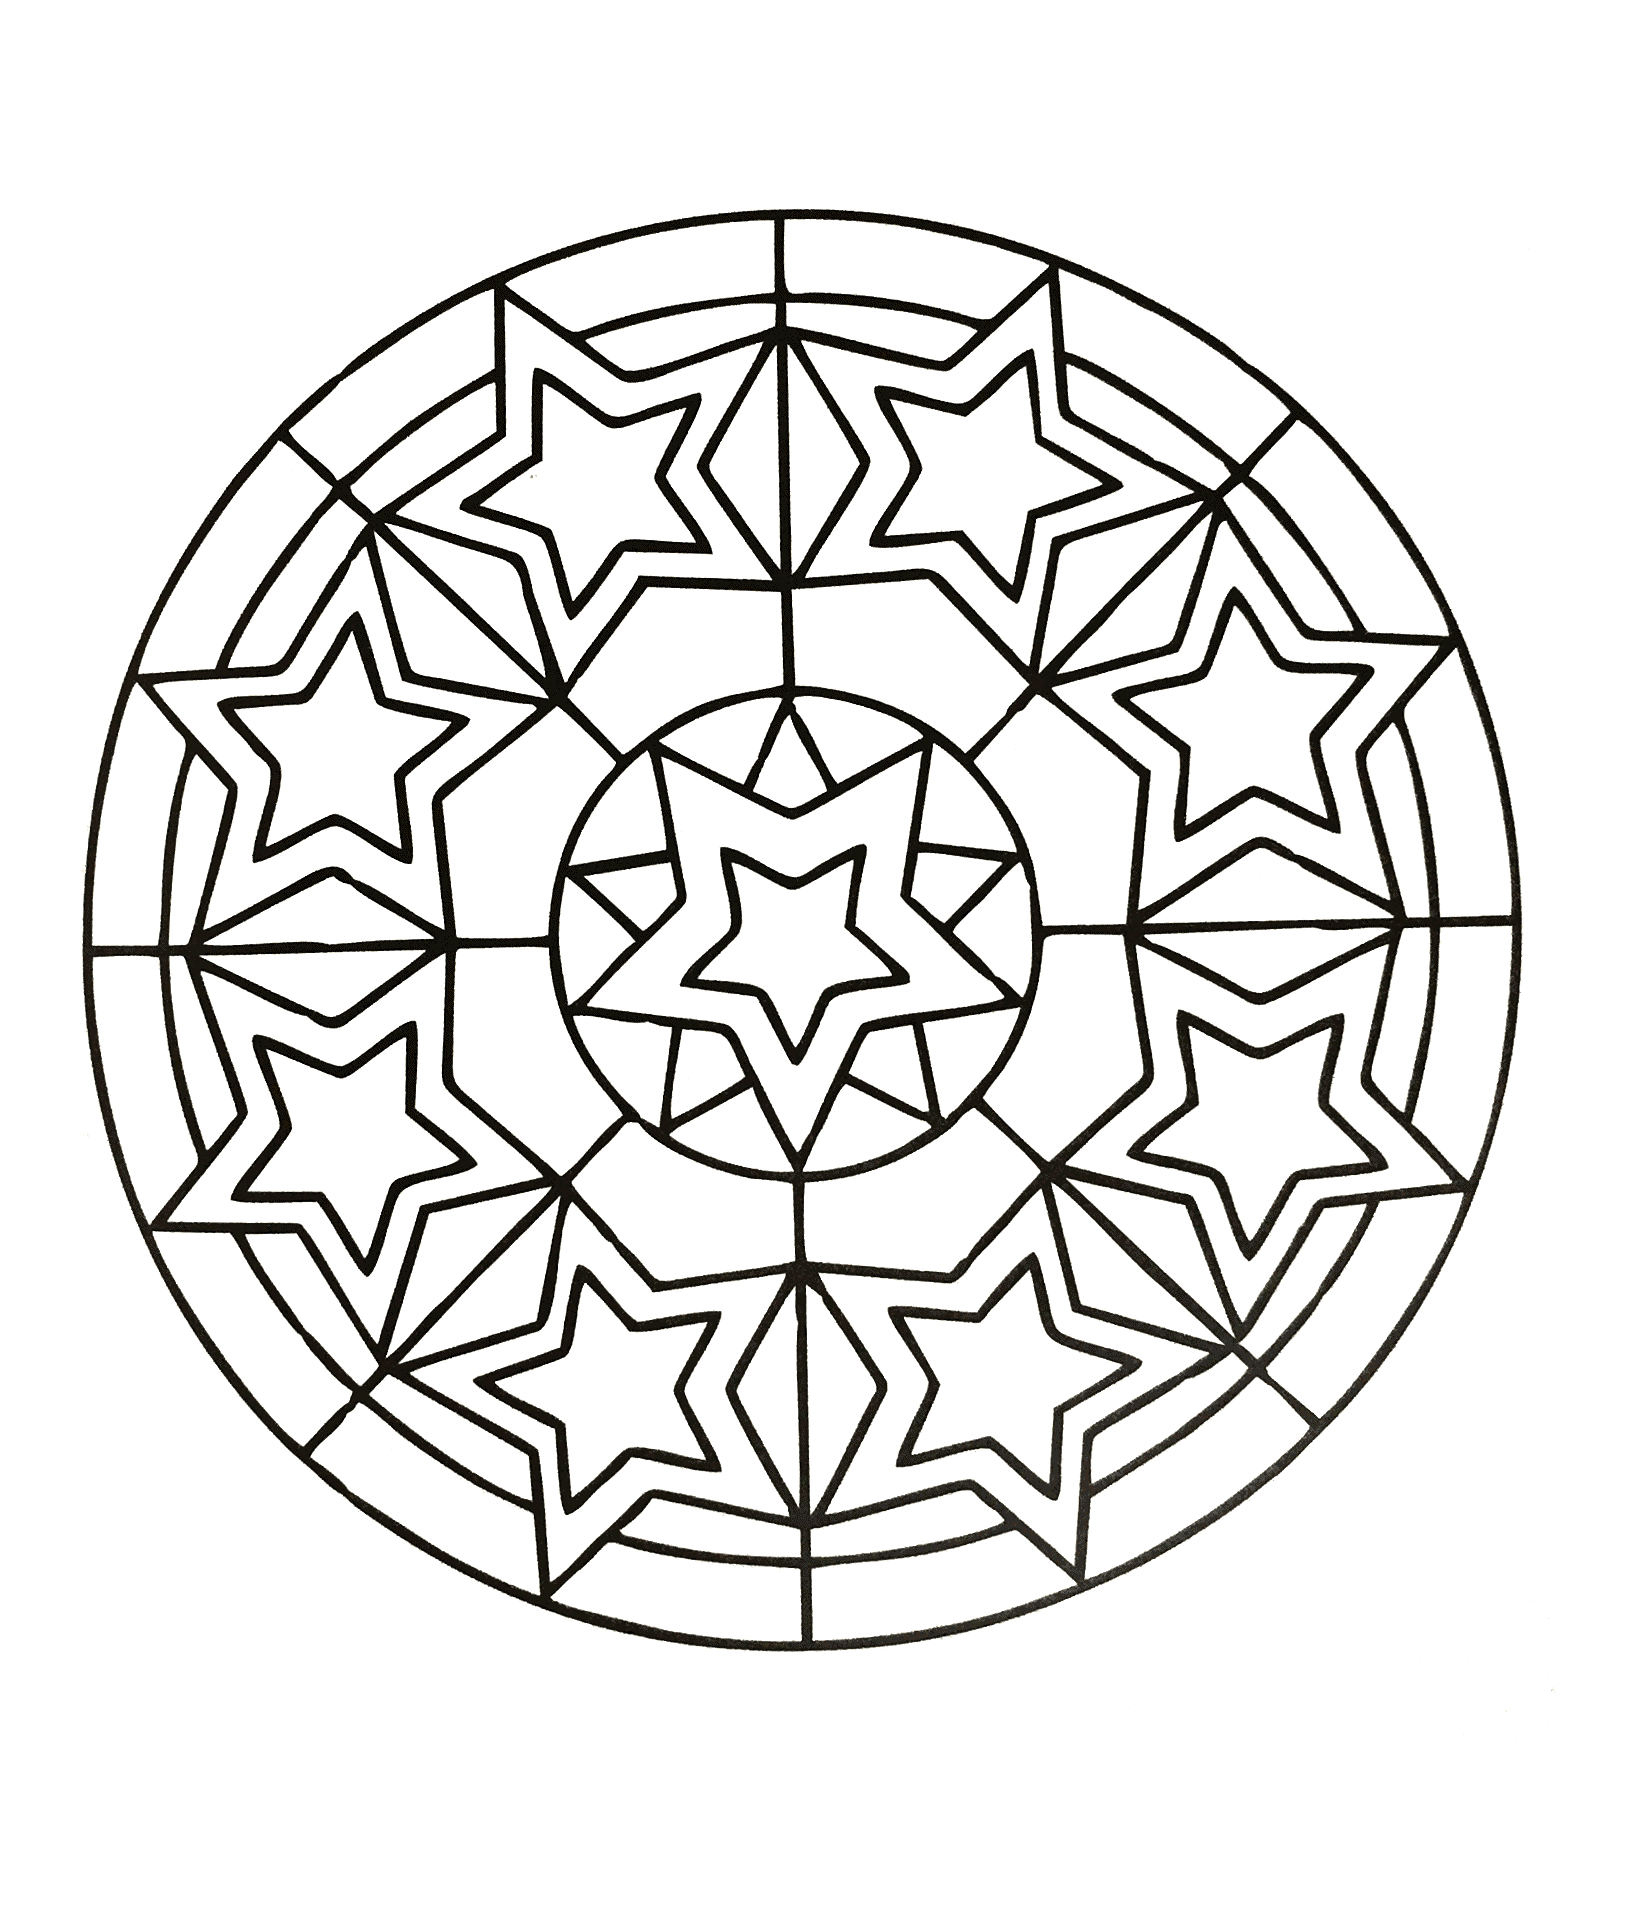 Quand le coloriage devient réellement de l'Art Thérapie ... C'est le cas avec ce coloriage de Mandala très harmonieux et délicat, créé à partir de motifs d'étoiles.